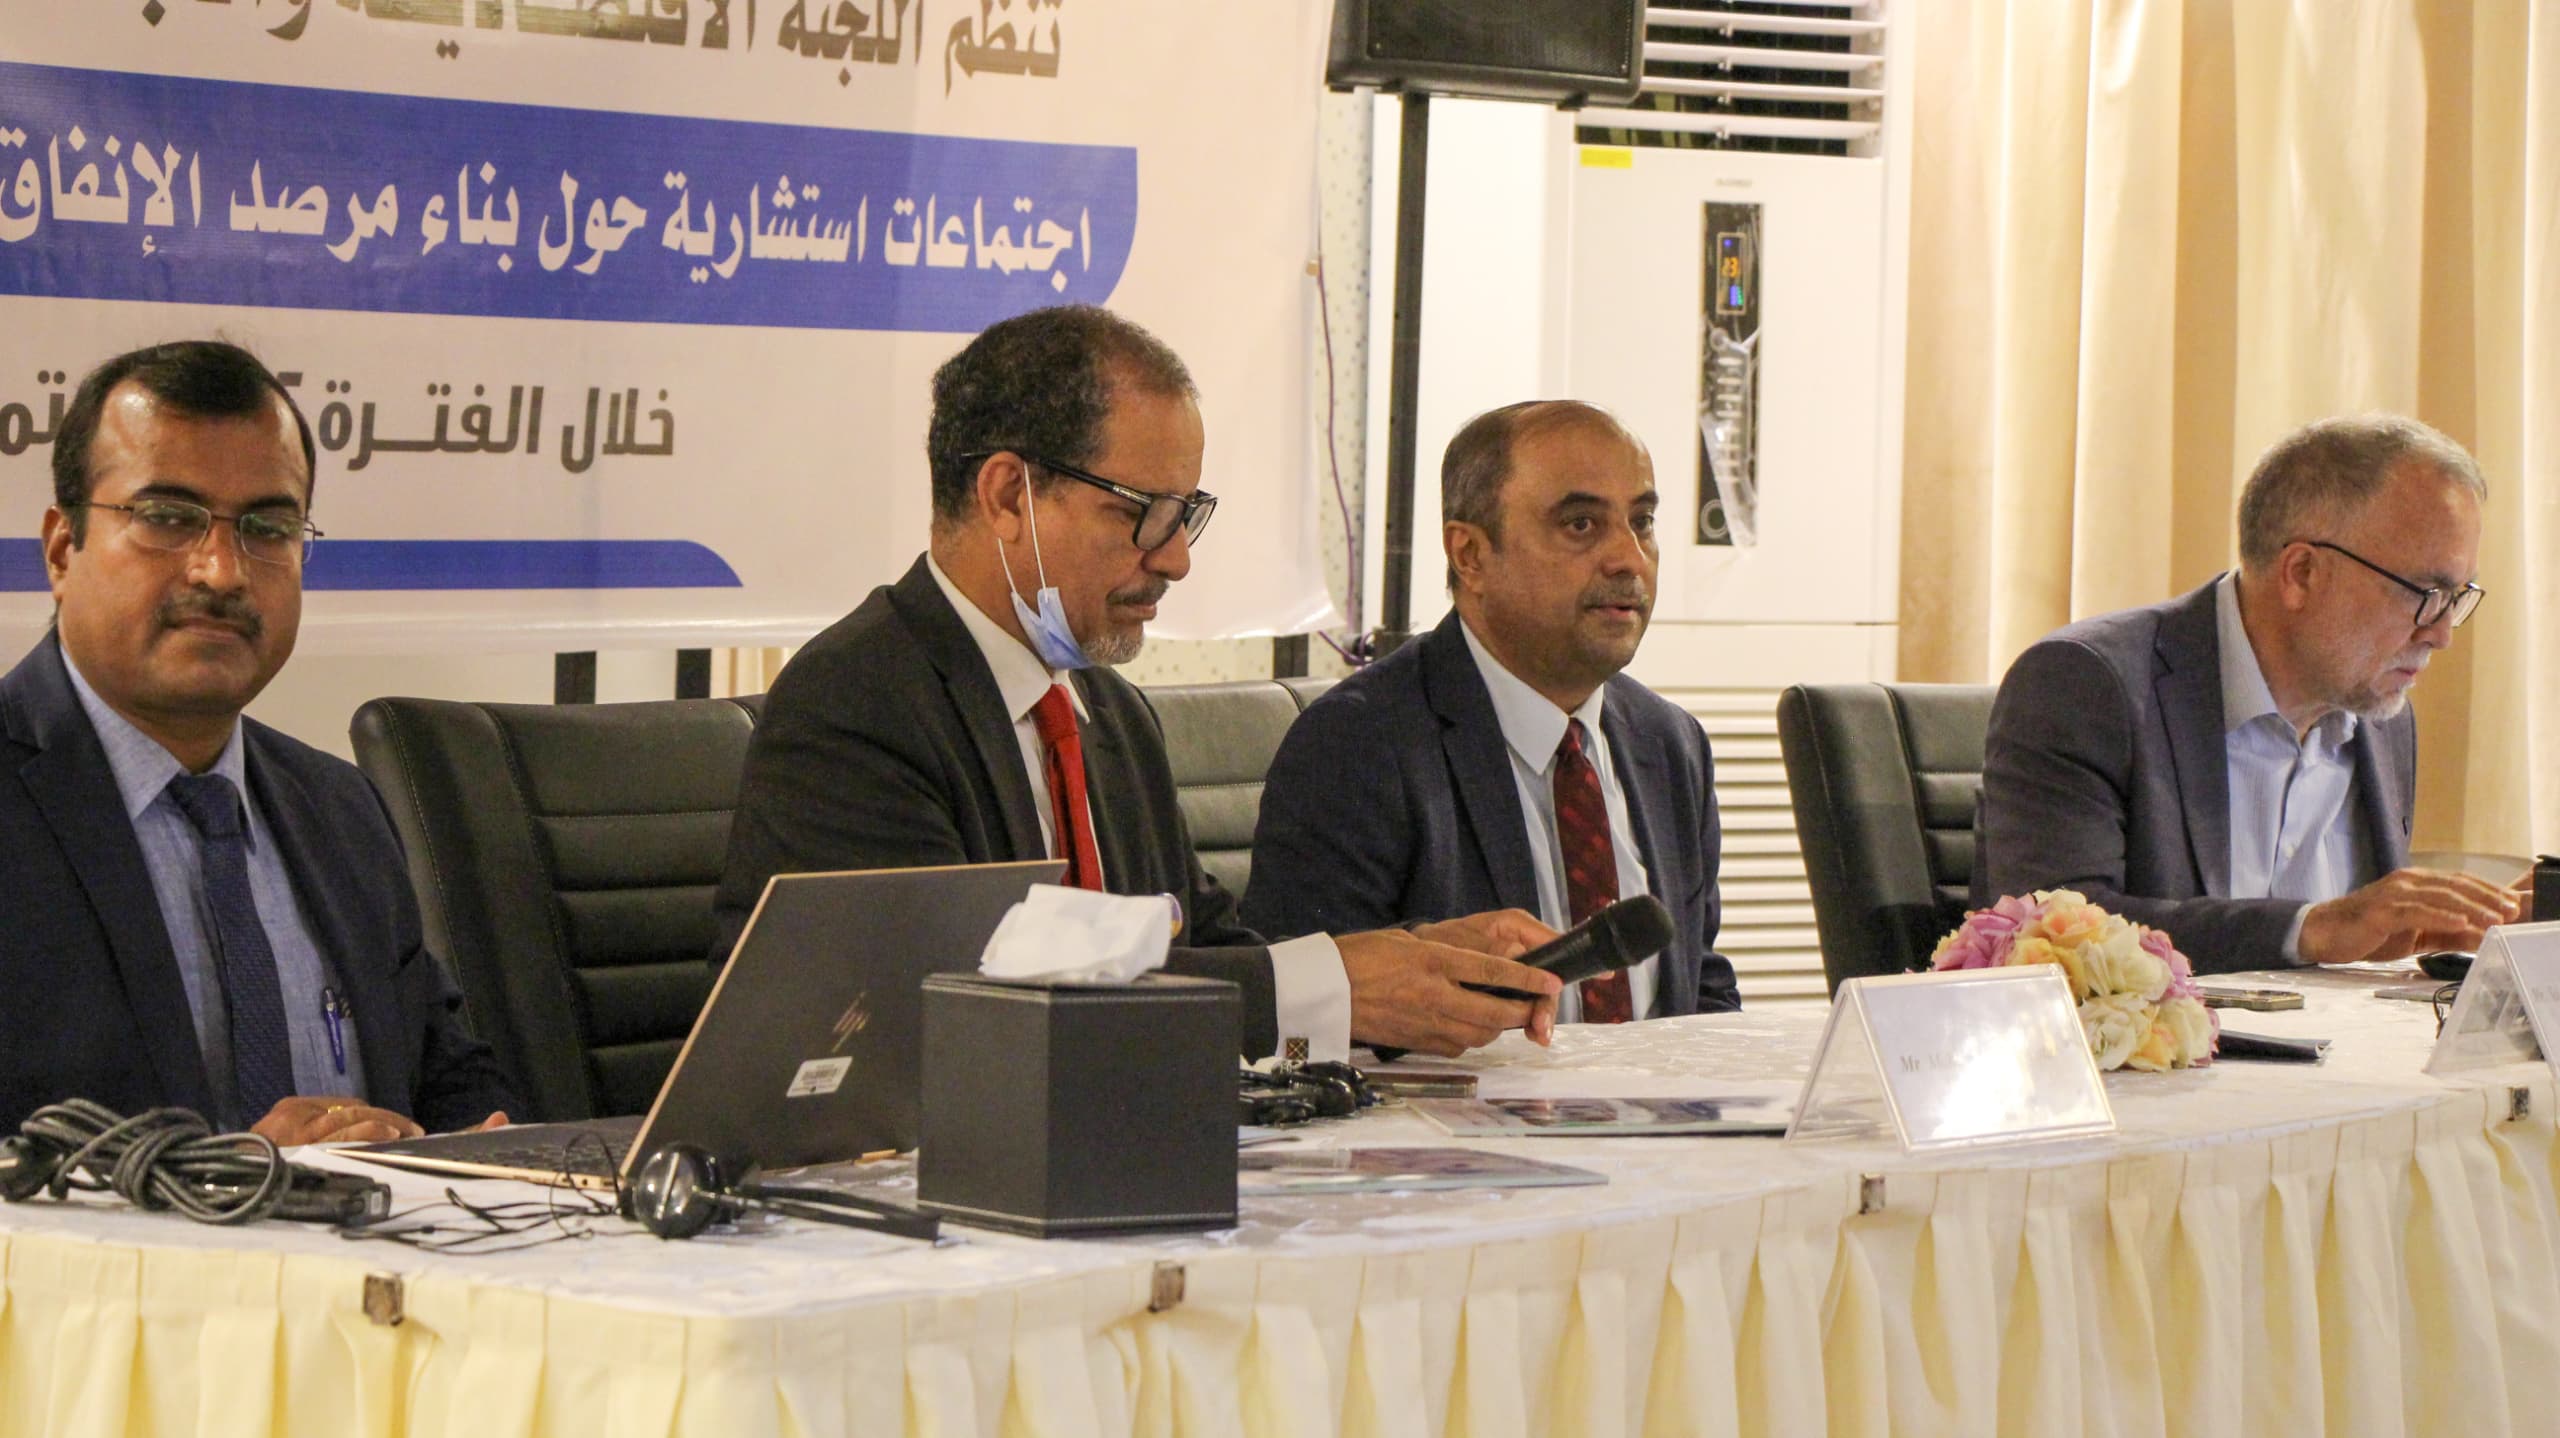 وزير المالية يفتتح اجتماعات بناء مرصد الإنفاق الاجتماعي في اليمن بدعم من (الإسكوا)